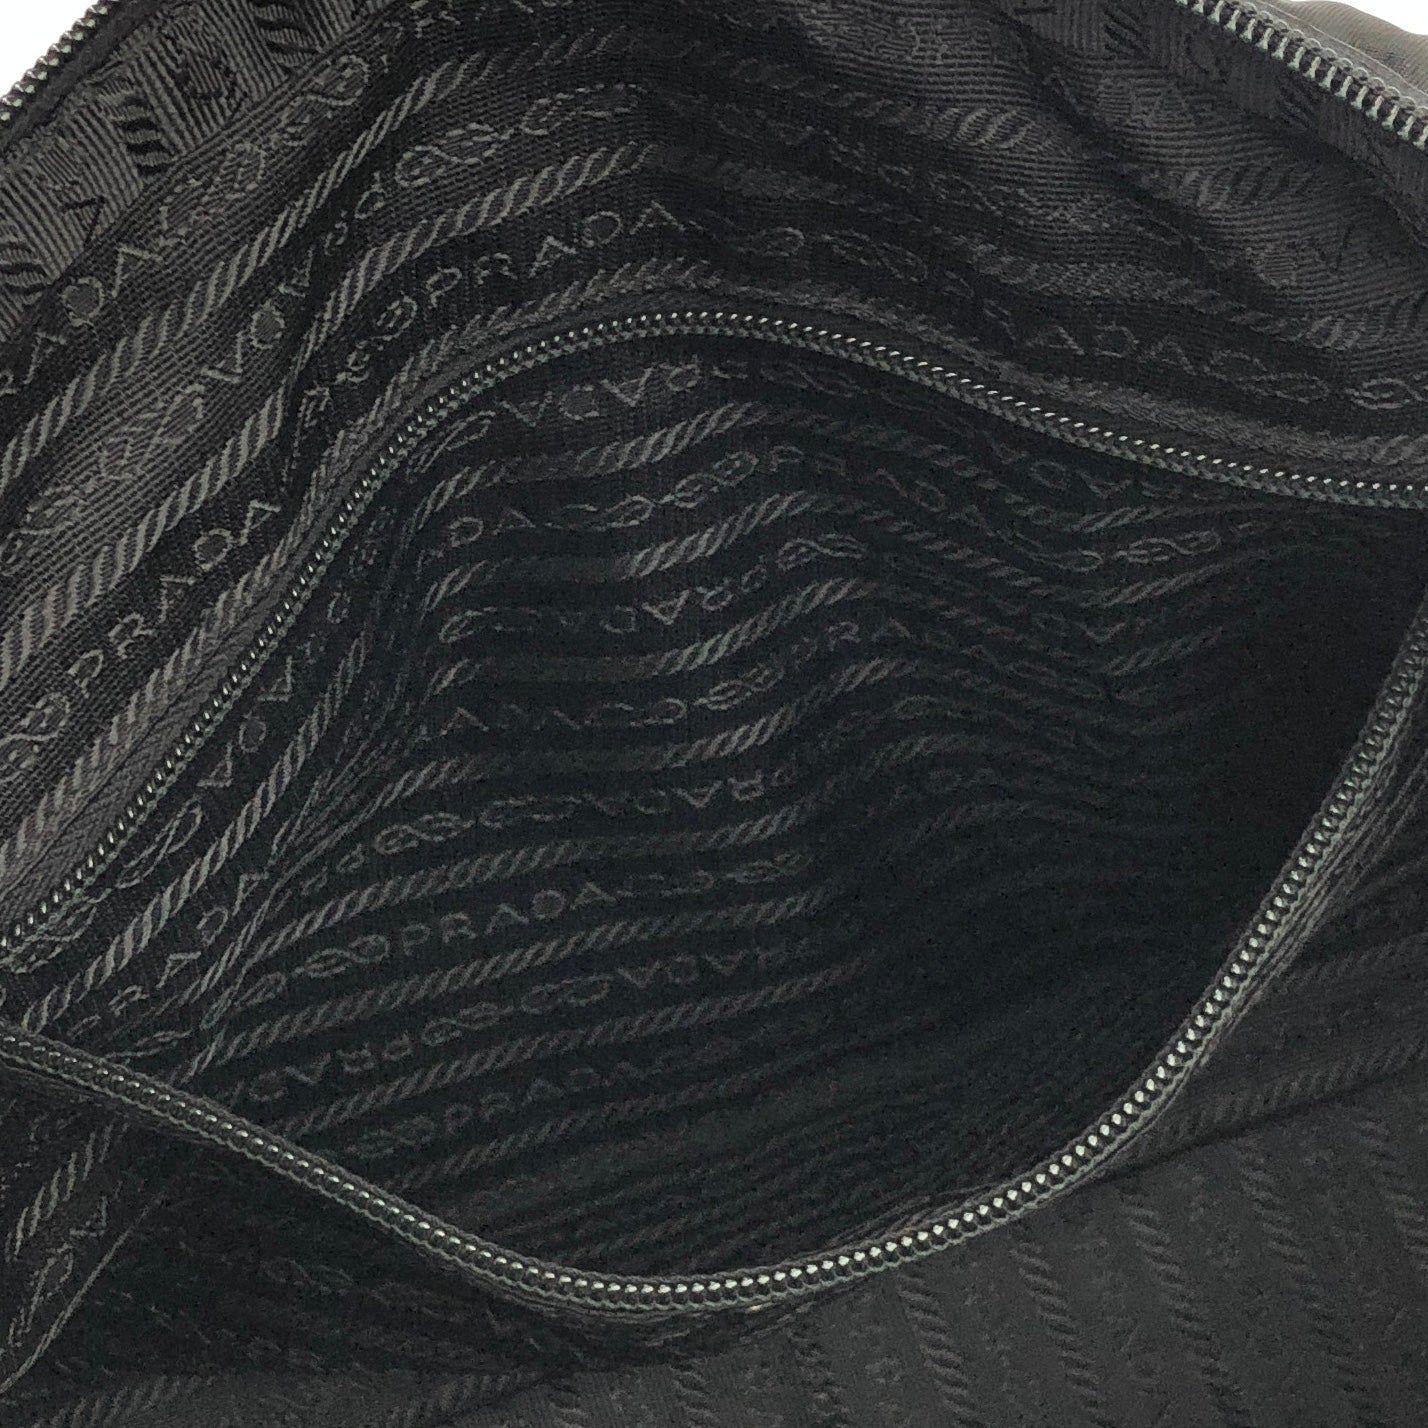 PRADA Triangle logo Crocodile embossed Nylon Tote bag Black Vintage Old vskjgf